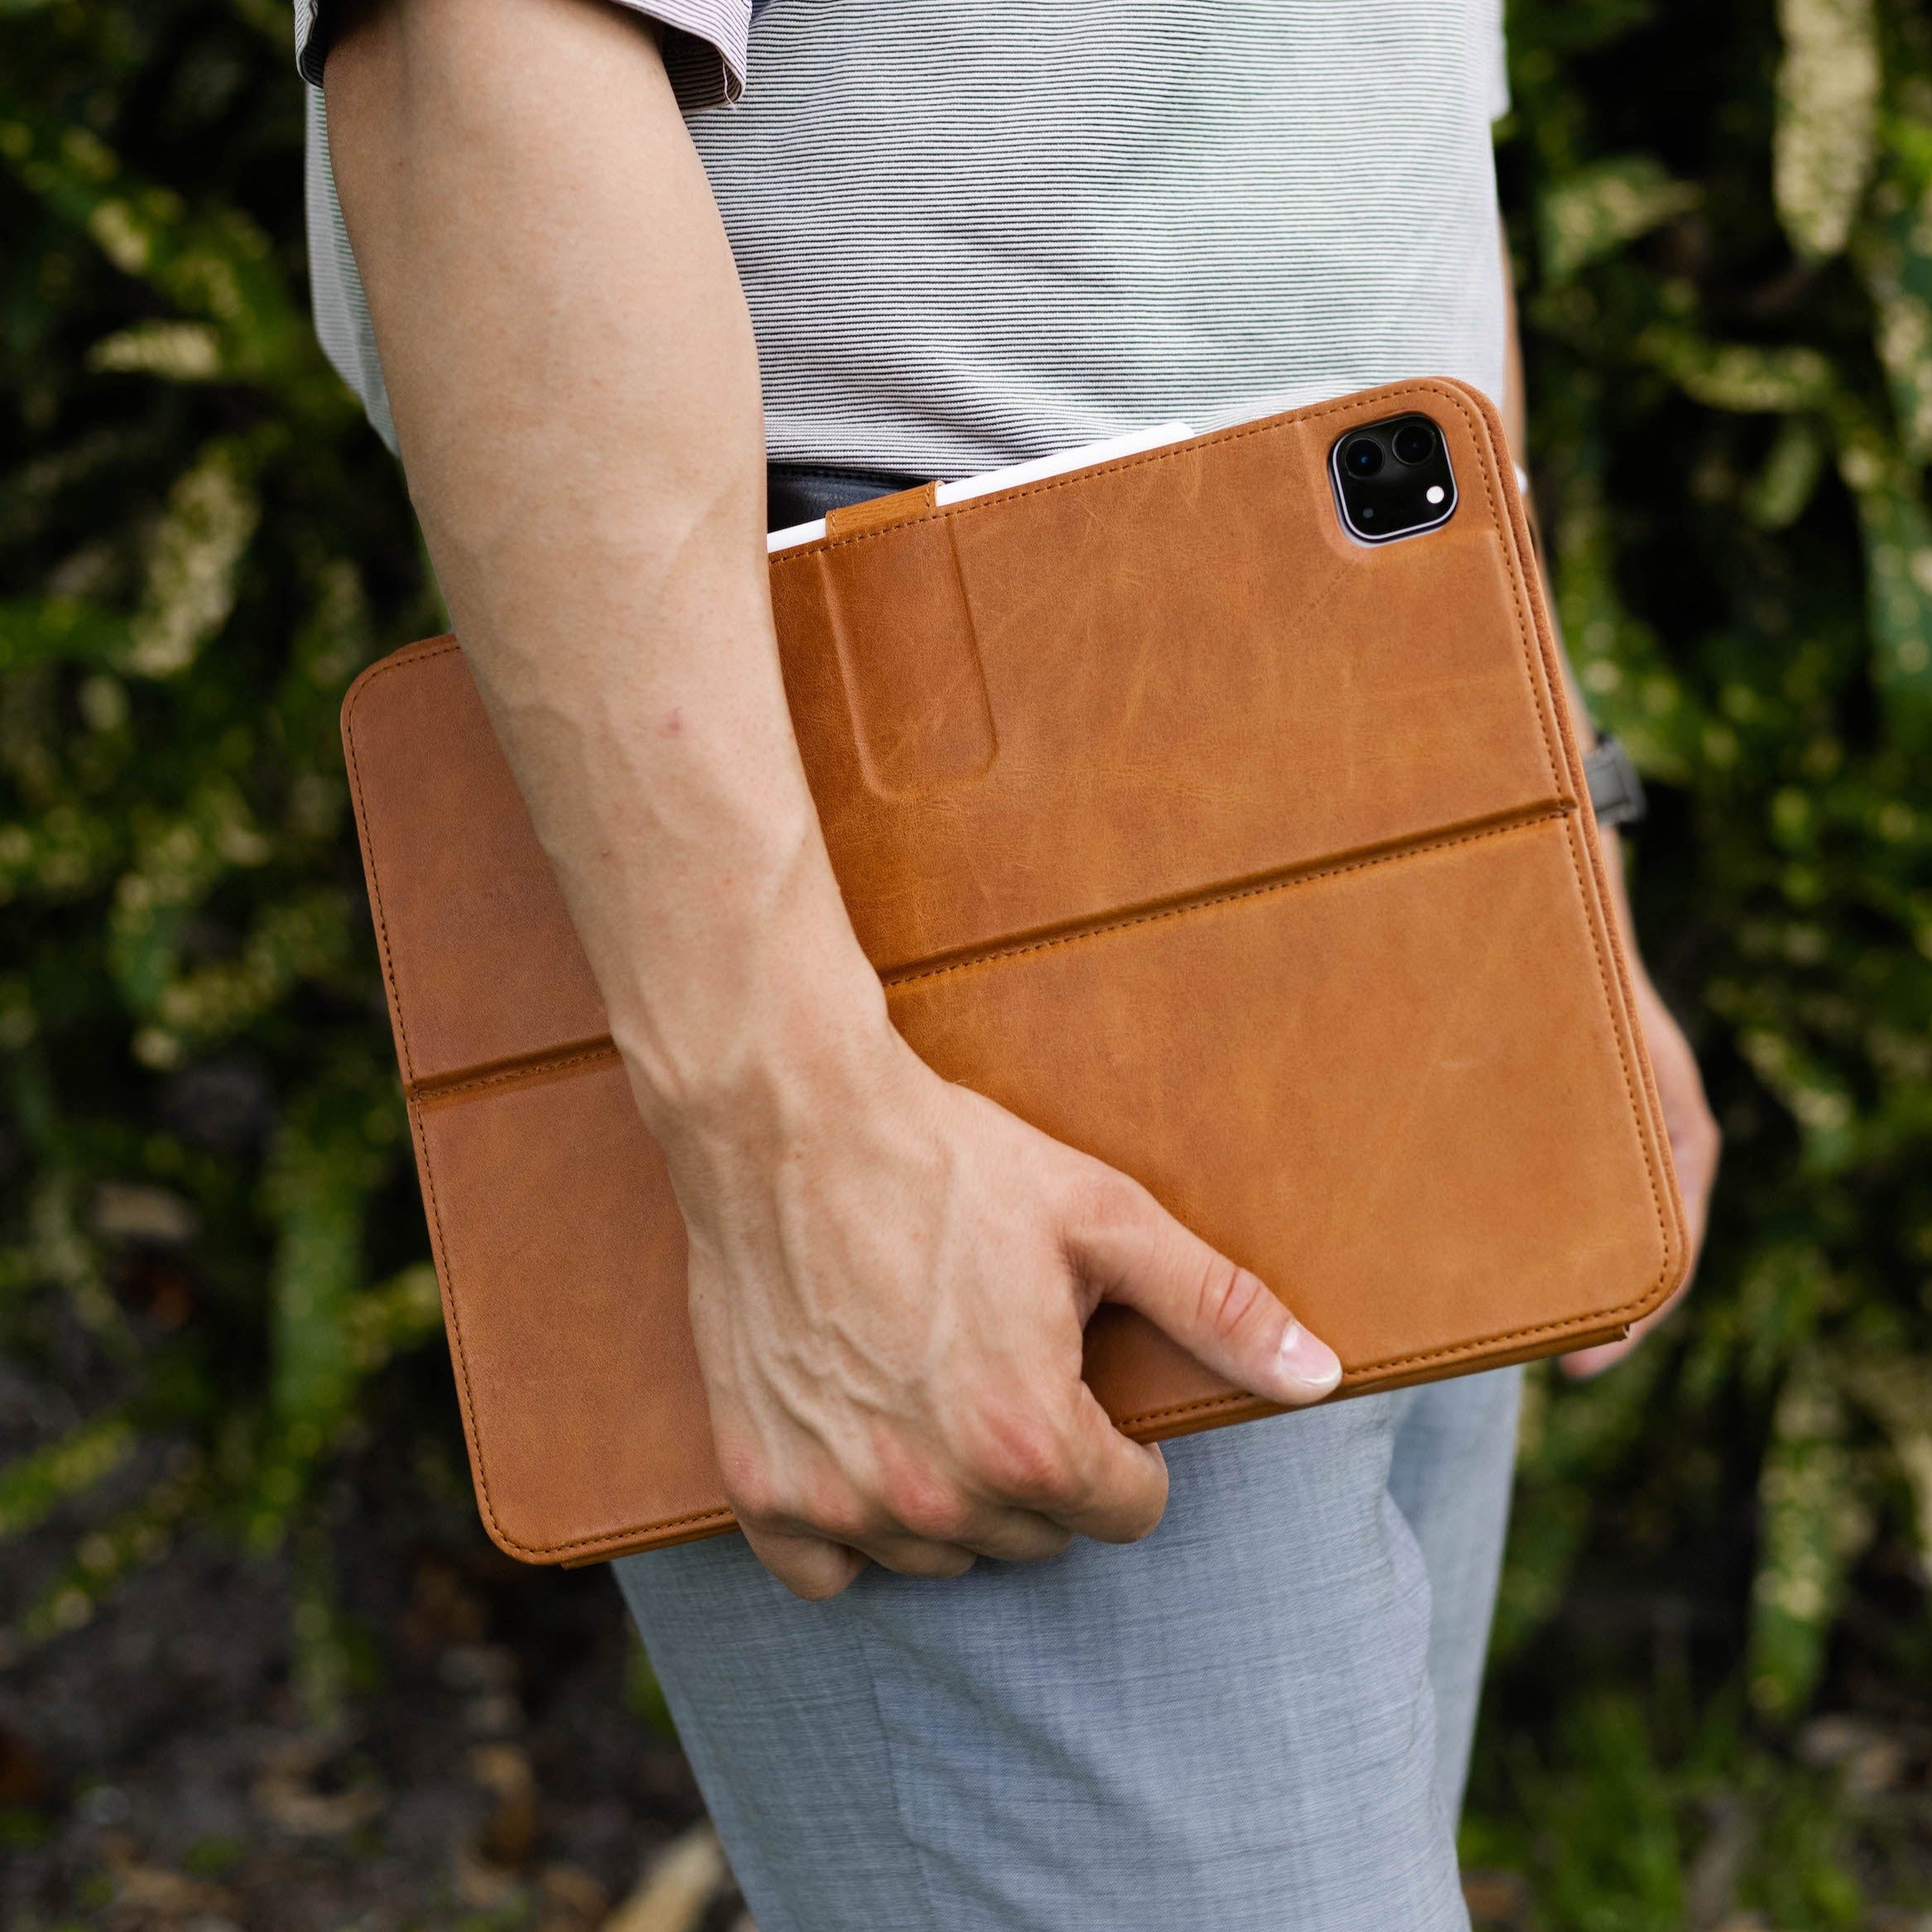 Leather iPad Pro Case - SIENNA